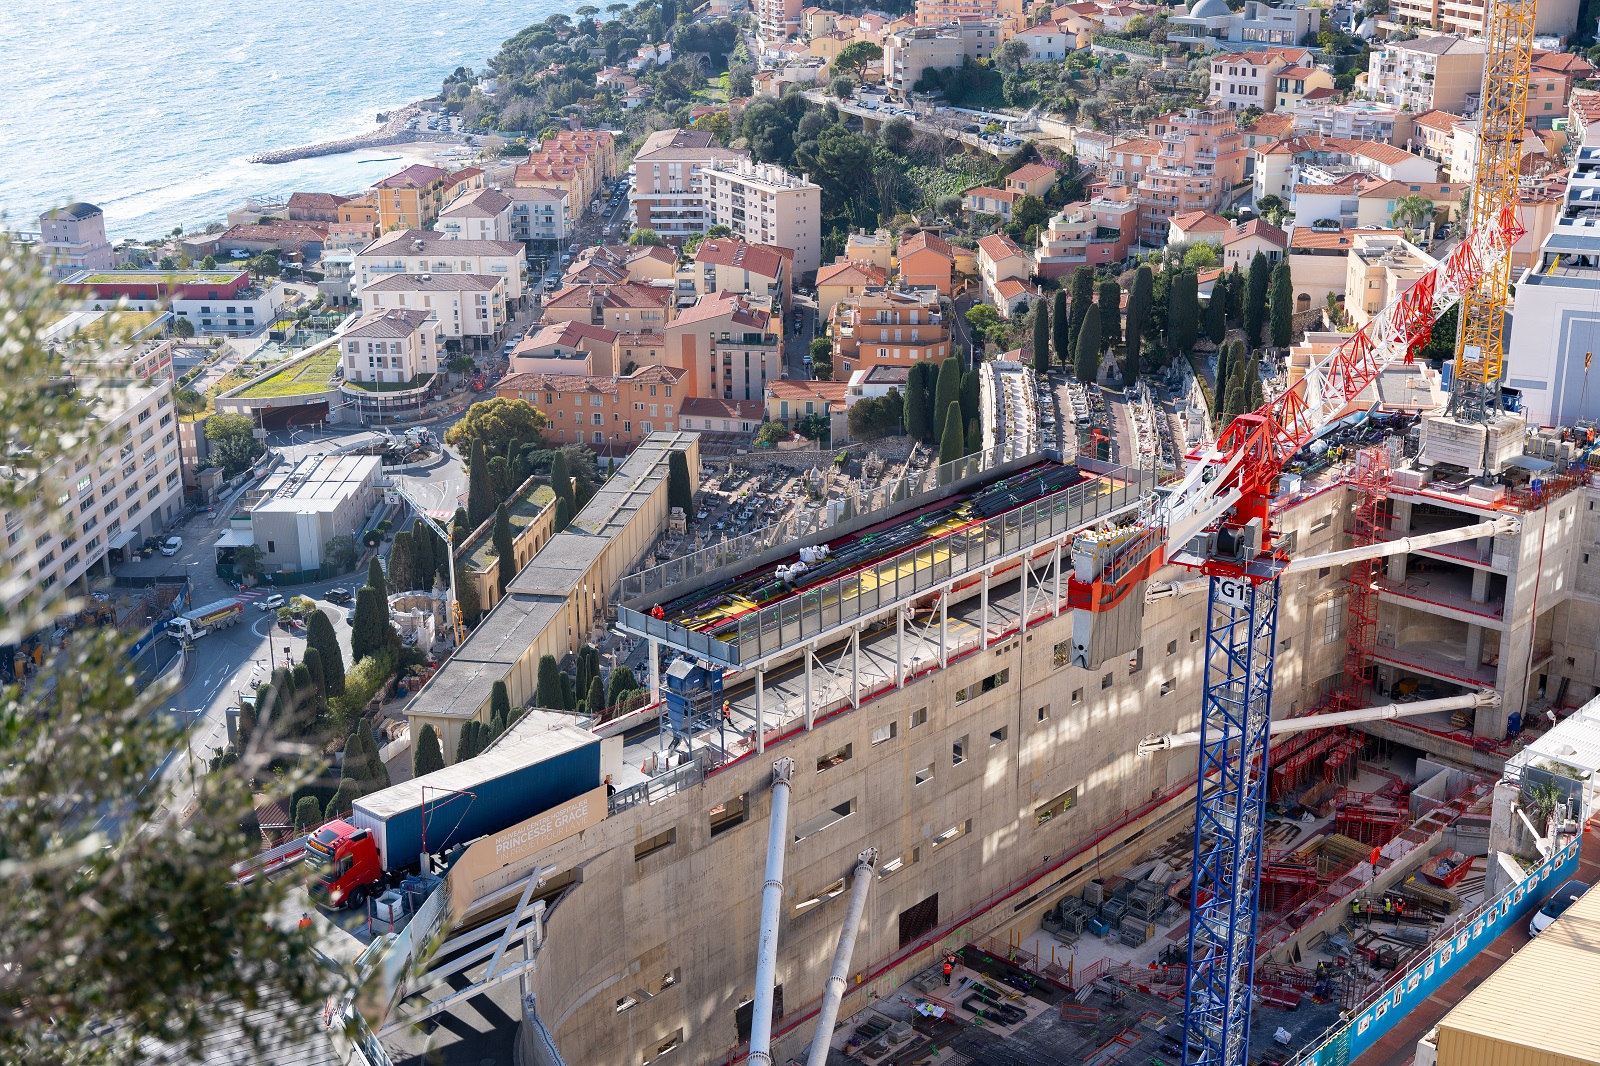 Featured image for “Storage gantry – Belvedere, NCHPG Monaco”